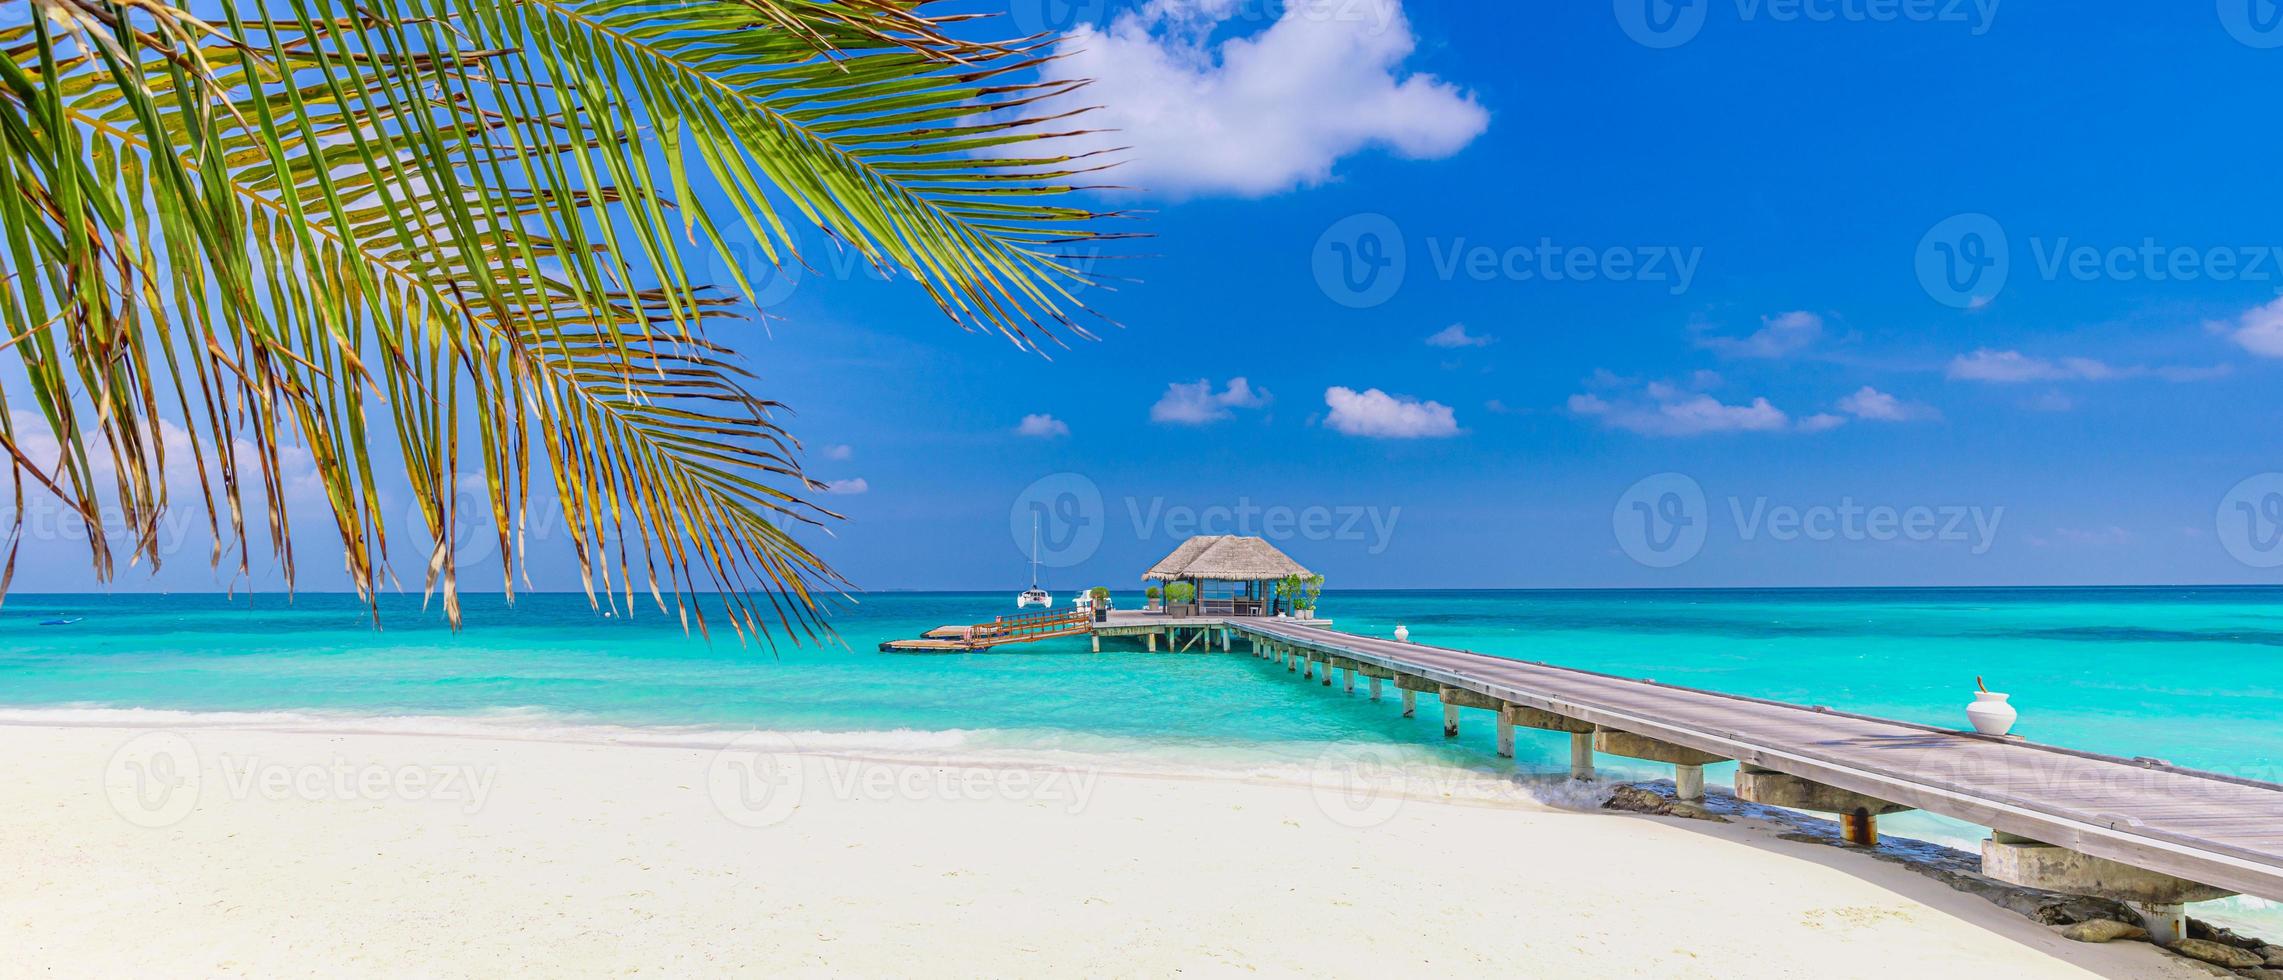 geweldig panoramalandschap van het strand van de Malediven. tropisch strand landschap zeegezicht, luxe watervilla resort houten pier. luxe reisbestemming achtergrond voor zomervakantie en vakantie concept foto